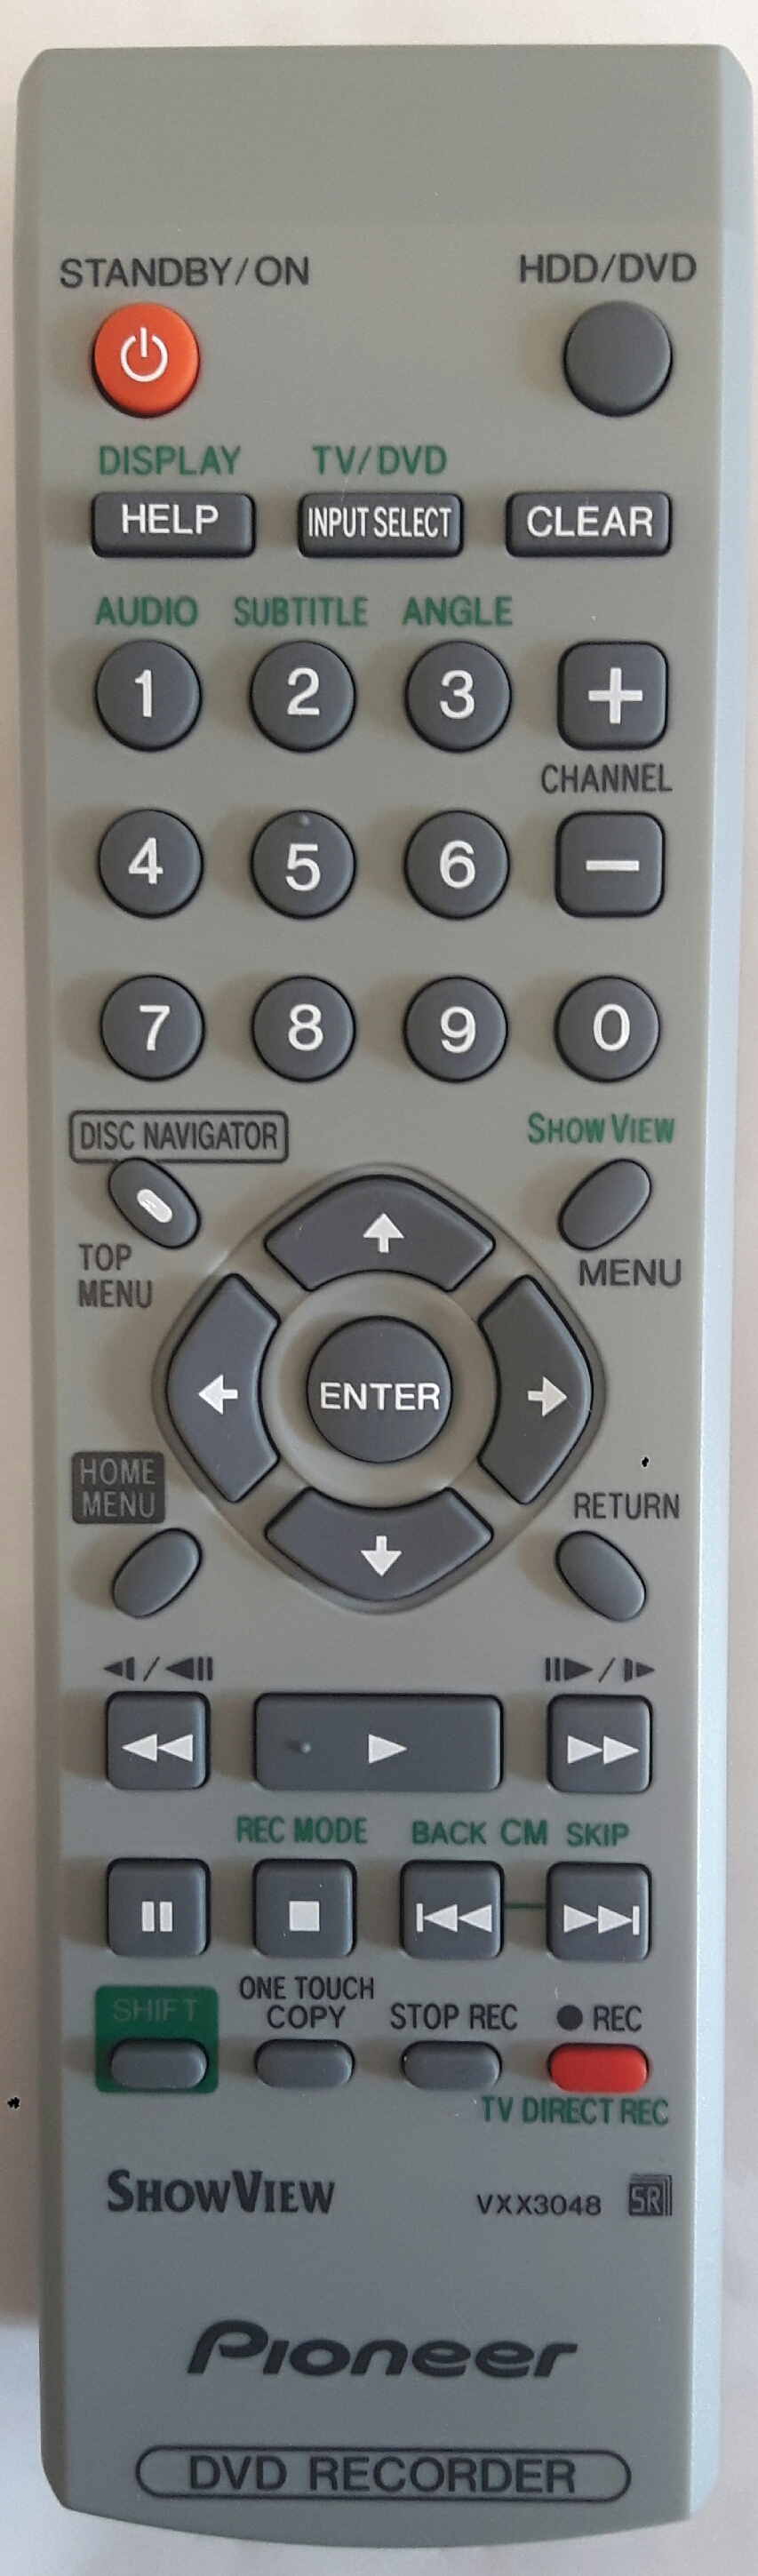 PIONEER VXX3048 Remote Control Original 